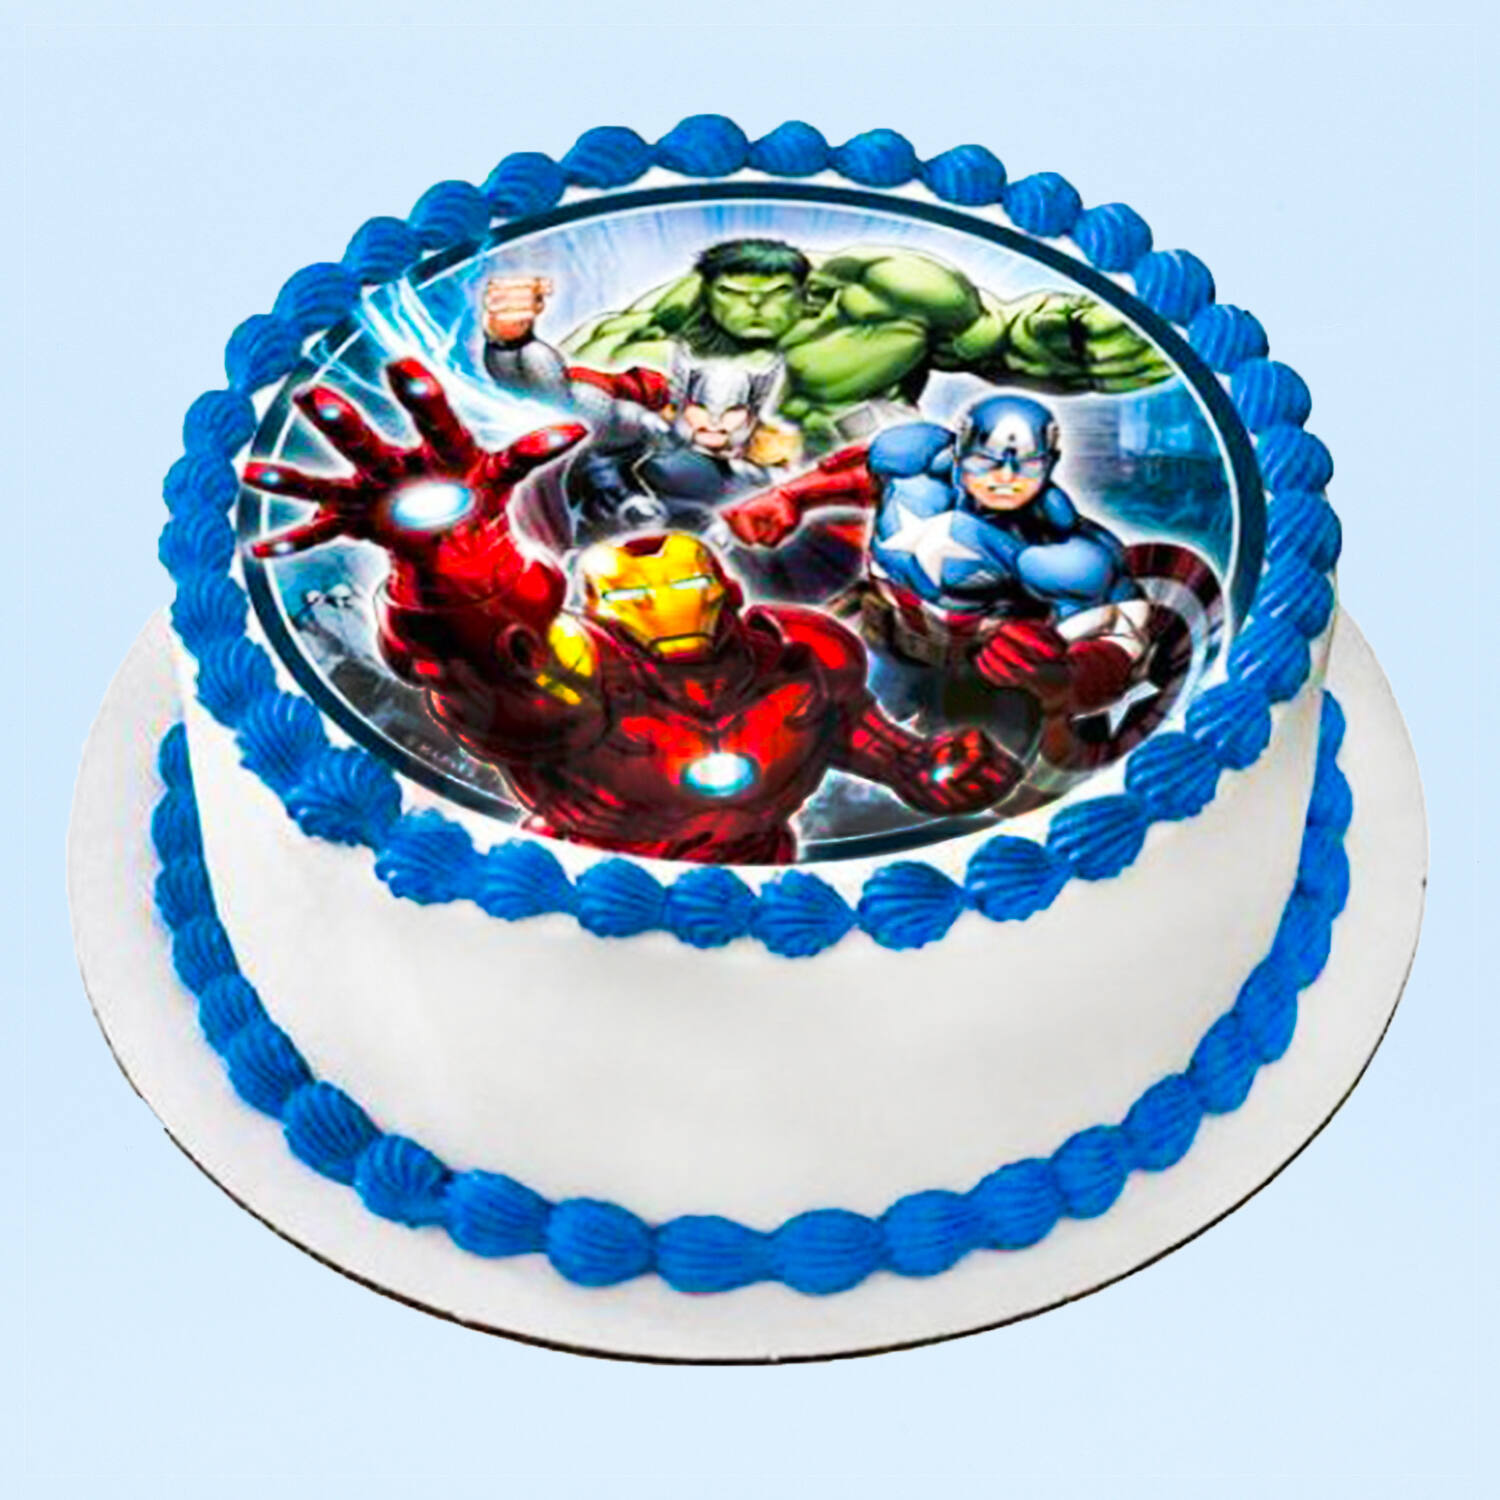 Awesome Avengers Photo Cake